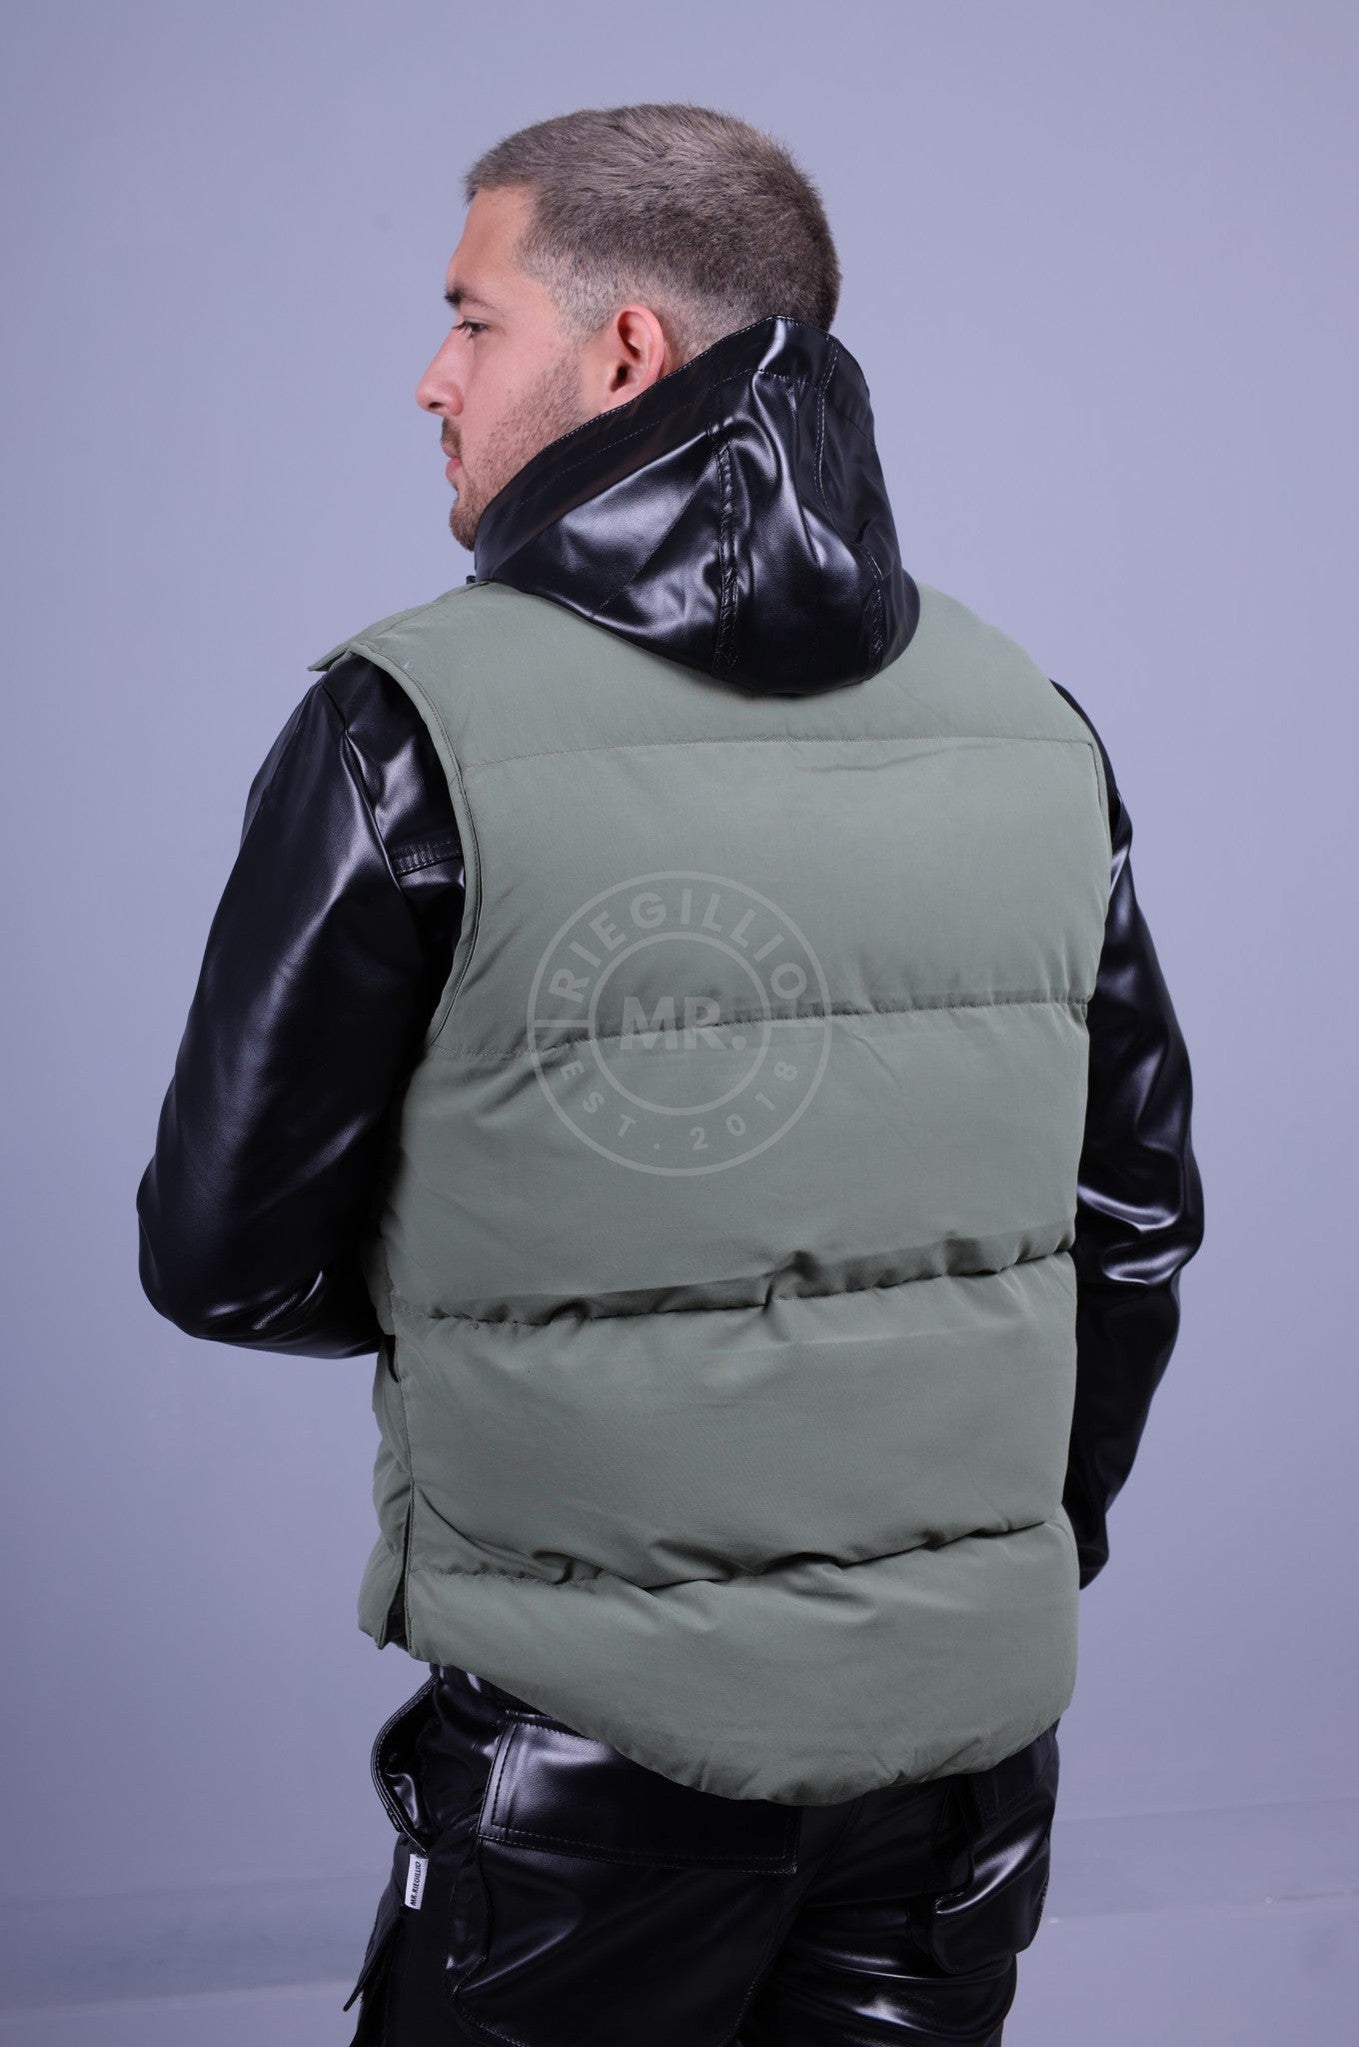 Vest Protector at Industries Puffer Sage - MR. Green Alpha Riegillio